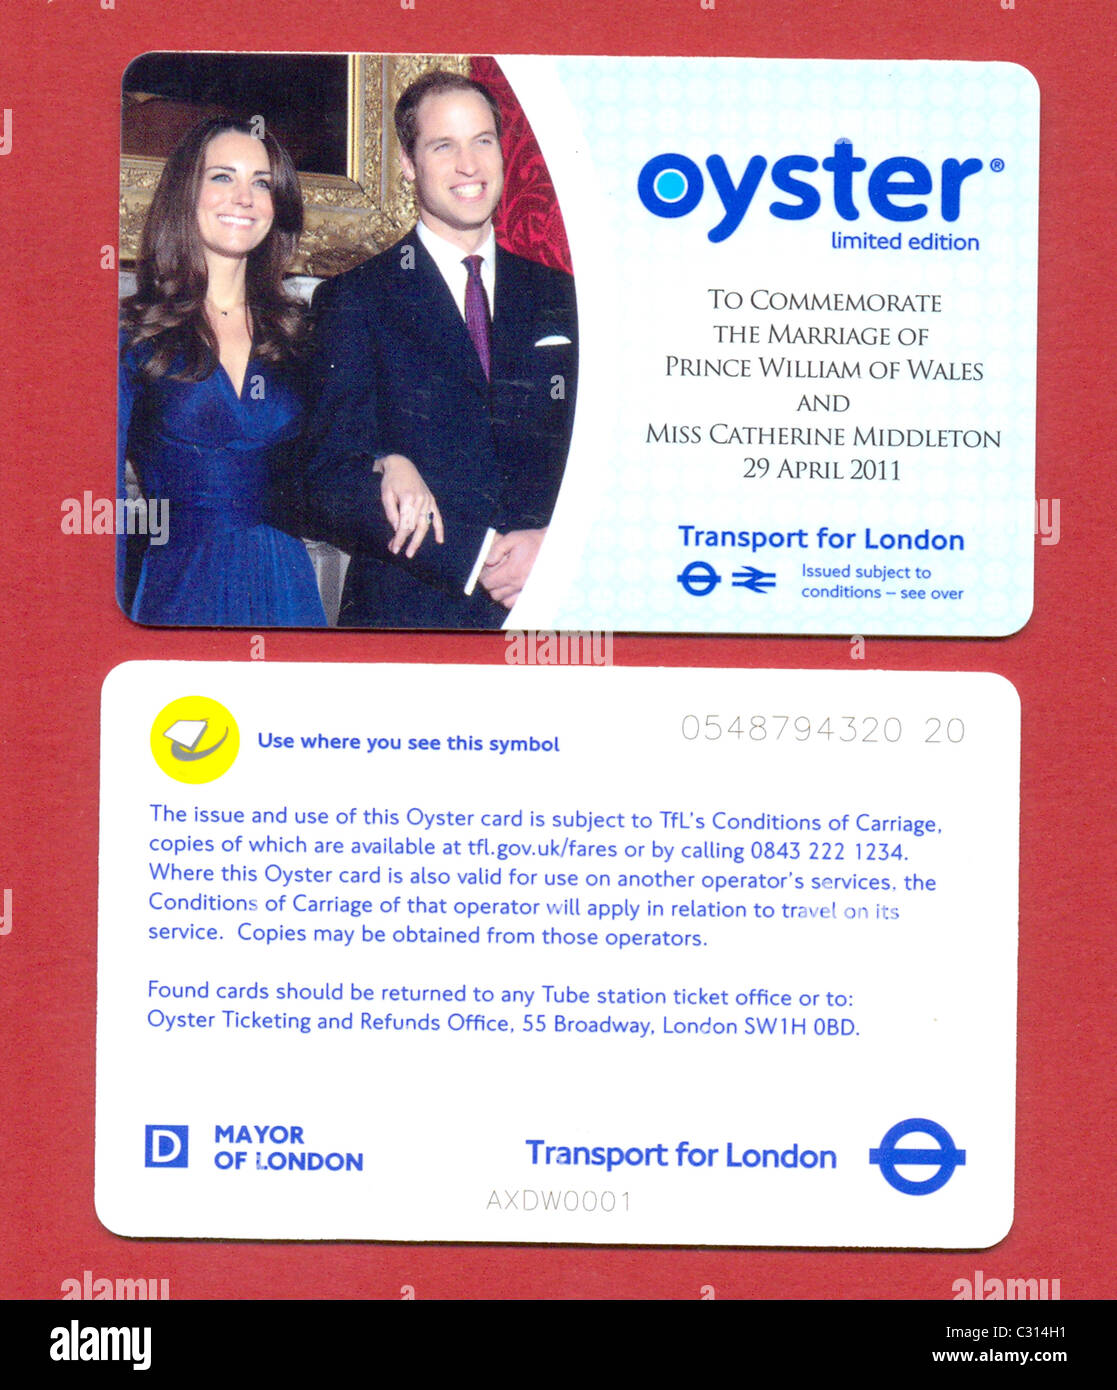 Limitierte Auflage-Oyster-Card zum Gedenken an die Hochzeit von Prinz William von Wales und Miss Catherine Middleton Stockfoto